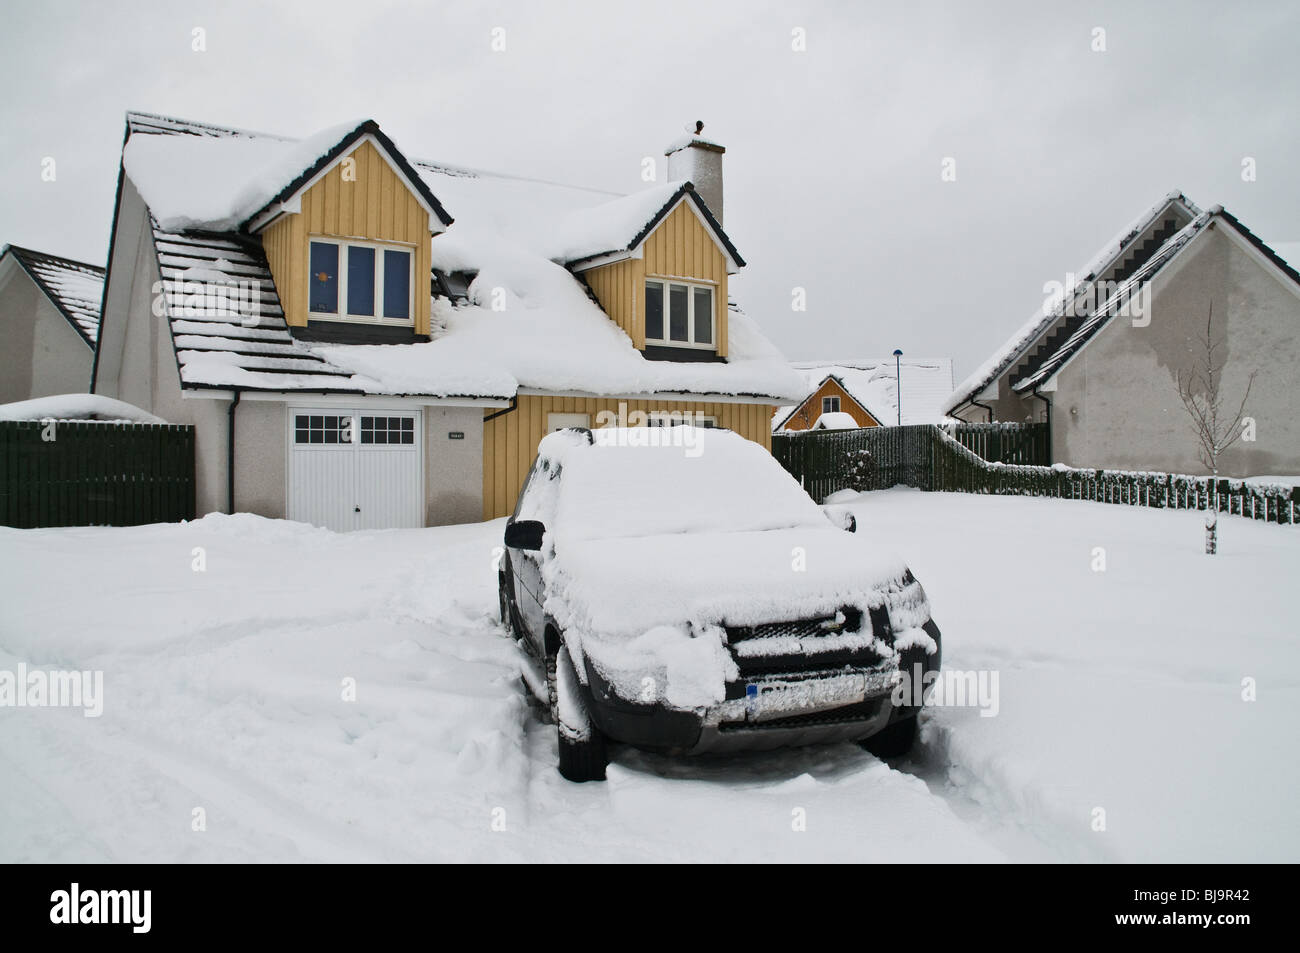 dh AVIEMORE INVERNESSSHIRE voiture couverte de neige dans la maison de jardin conduire neige hiver écosse maison extérieur scottish Highlands hiver gel grande-bretagne Banque D'Images